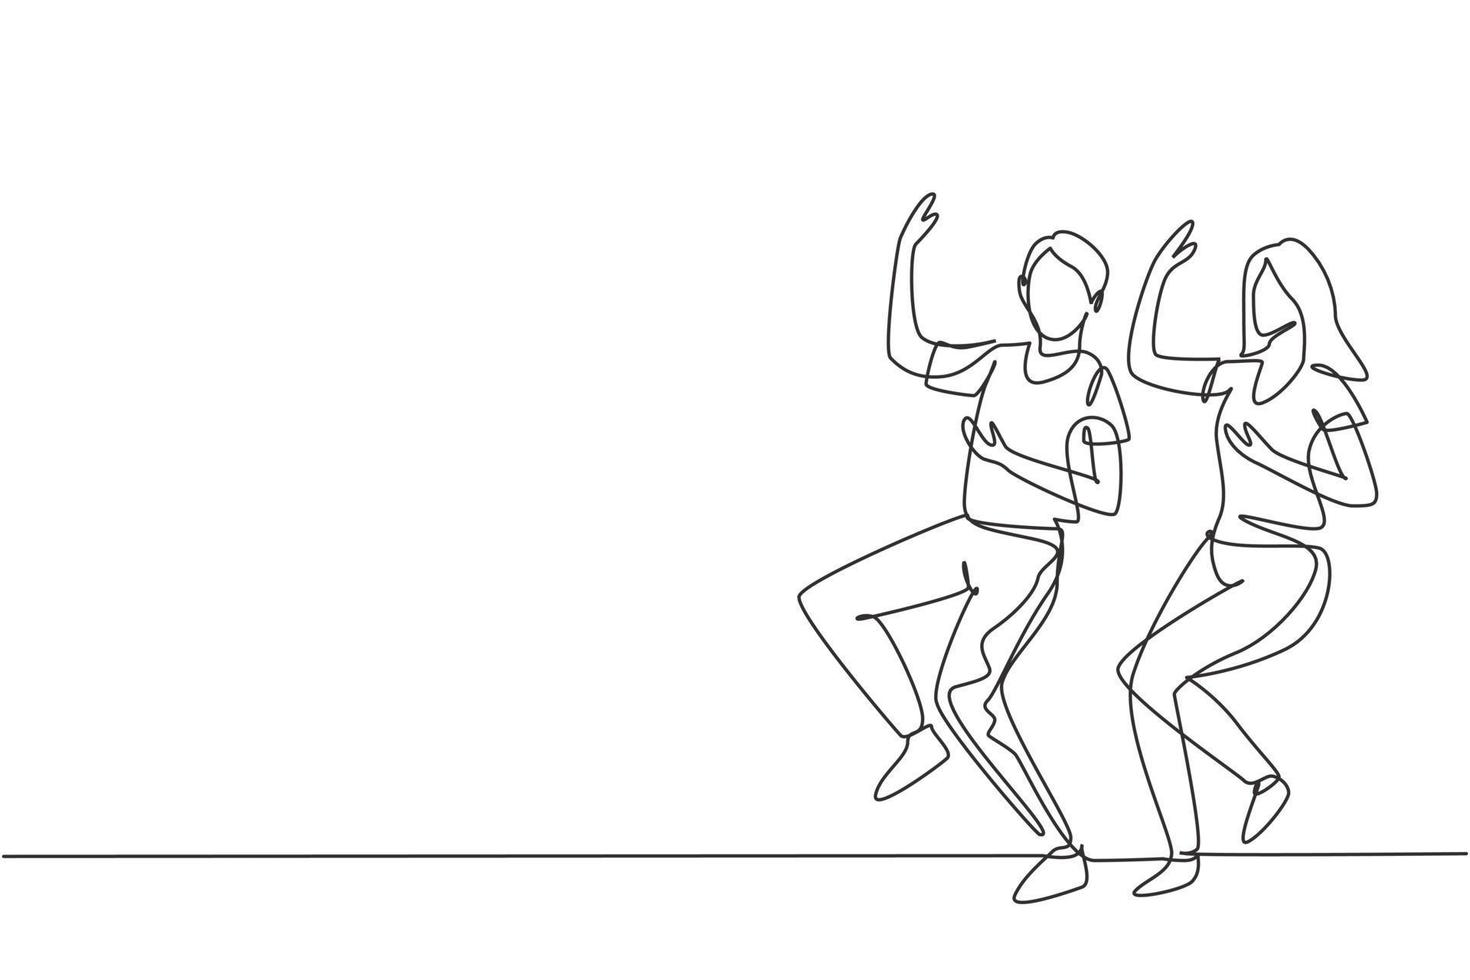 enda kontinuerlig linjeteckning man och kvinna dansar lindy hop eller swing. manliga och kvinnliga karaktärer som dansar i skolan. lyckligt par. dynamisk en rad rita grafisk design vektorillustration vektor